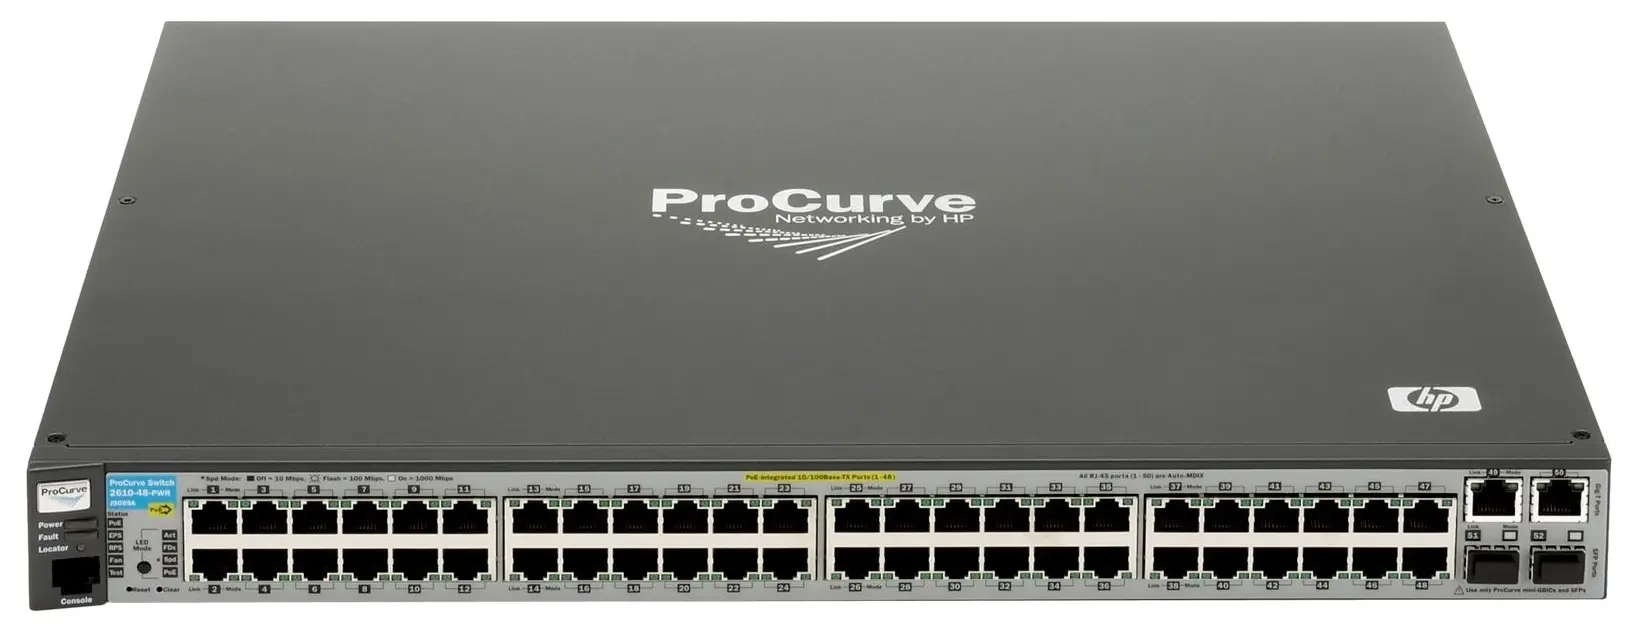 J9088A#ABA HP ProCurve E2610-48 48-Ports Fast Ethernet ...